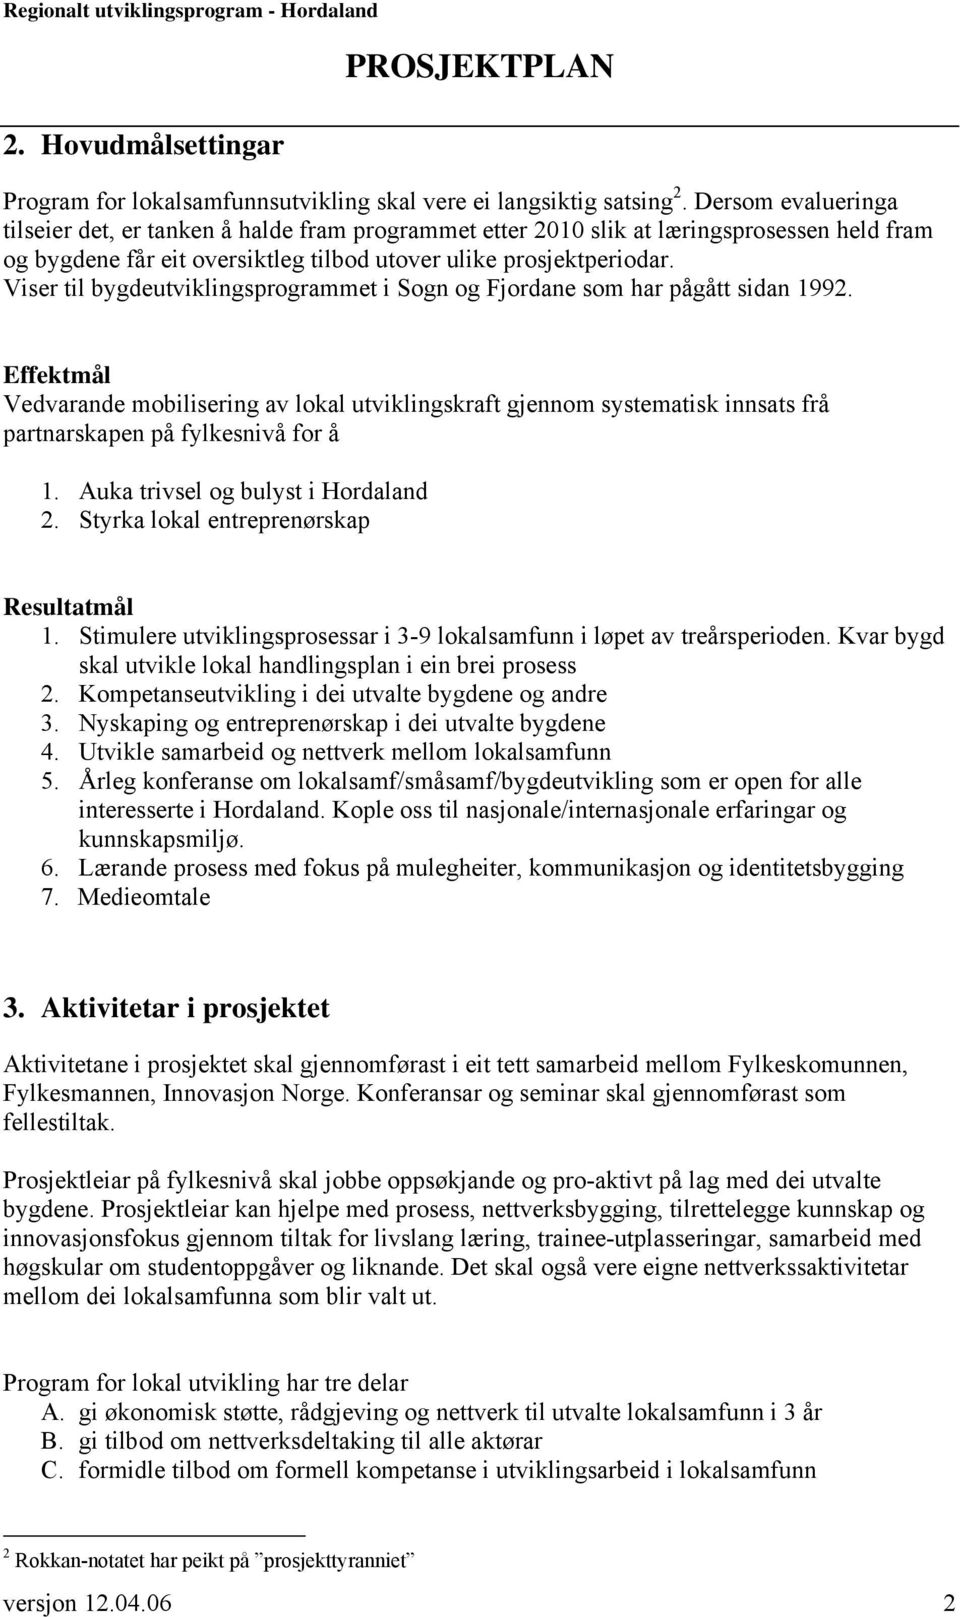 Viser til bygdeutviklingsprogrammet i Sogn og Fjordane som har pågått sidan 1992.